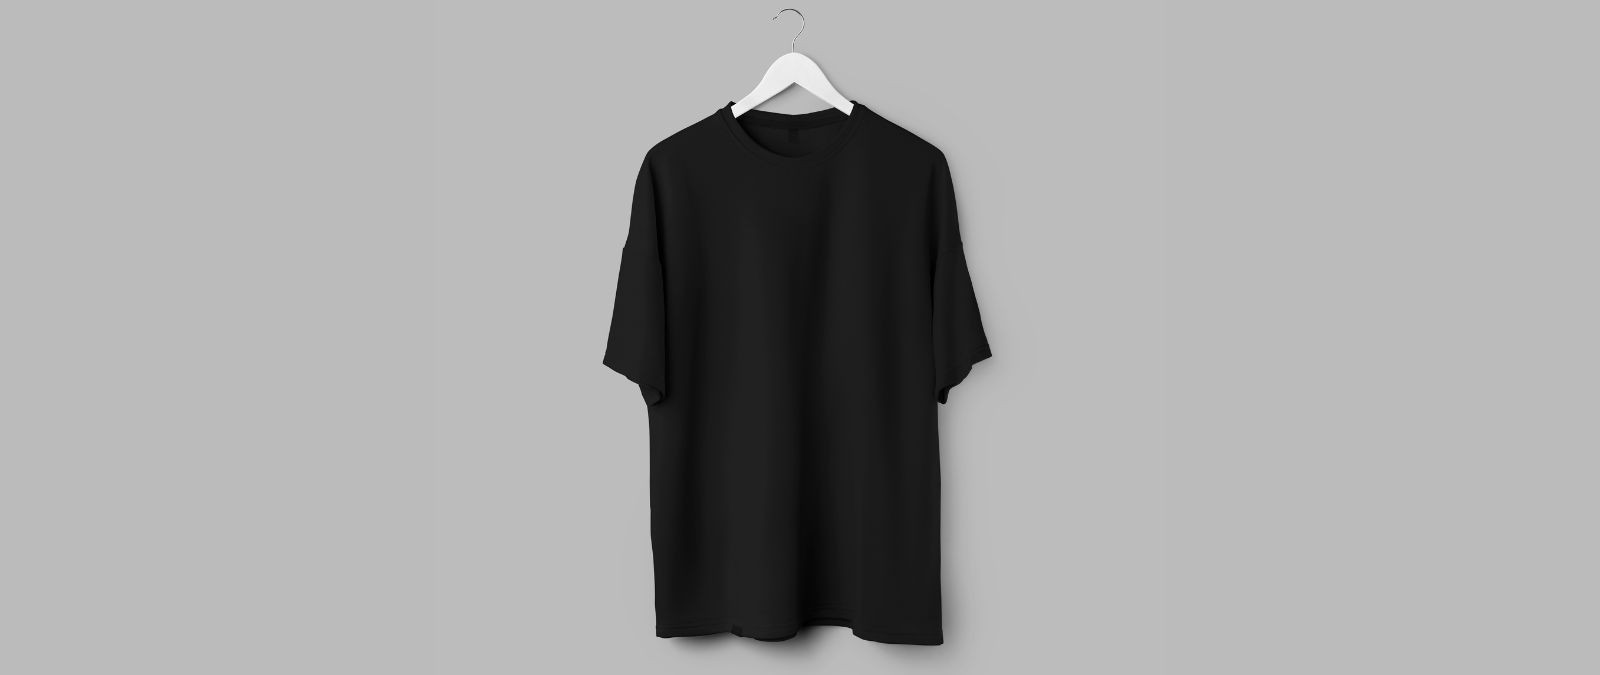 Werbemittel: Ein schwarzes T-Shirt hängt vor einem grauen Hintergrund.